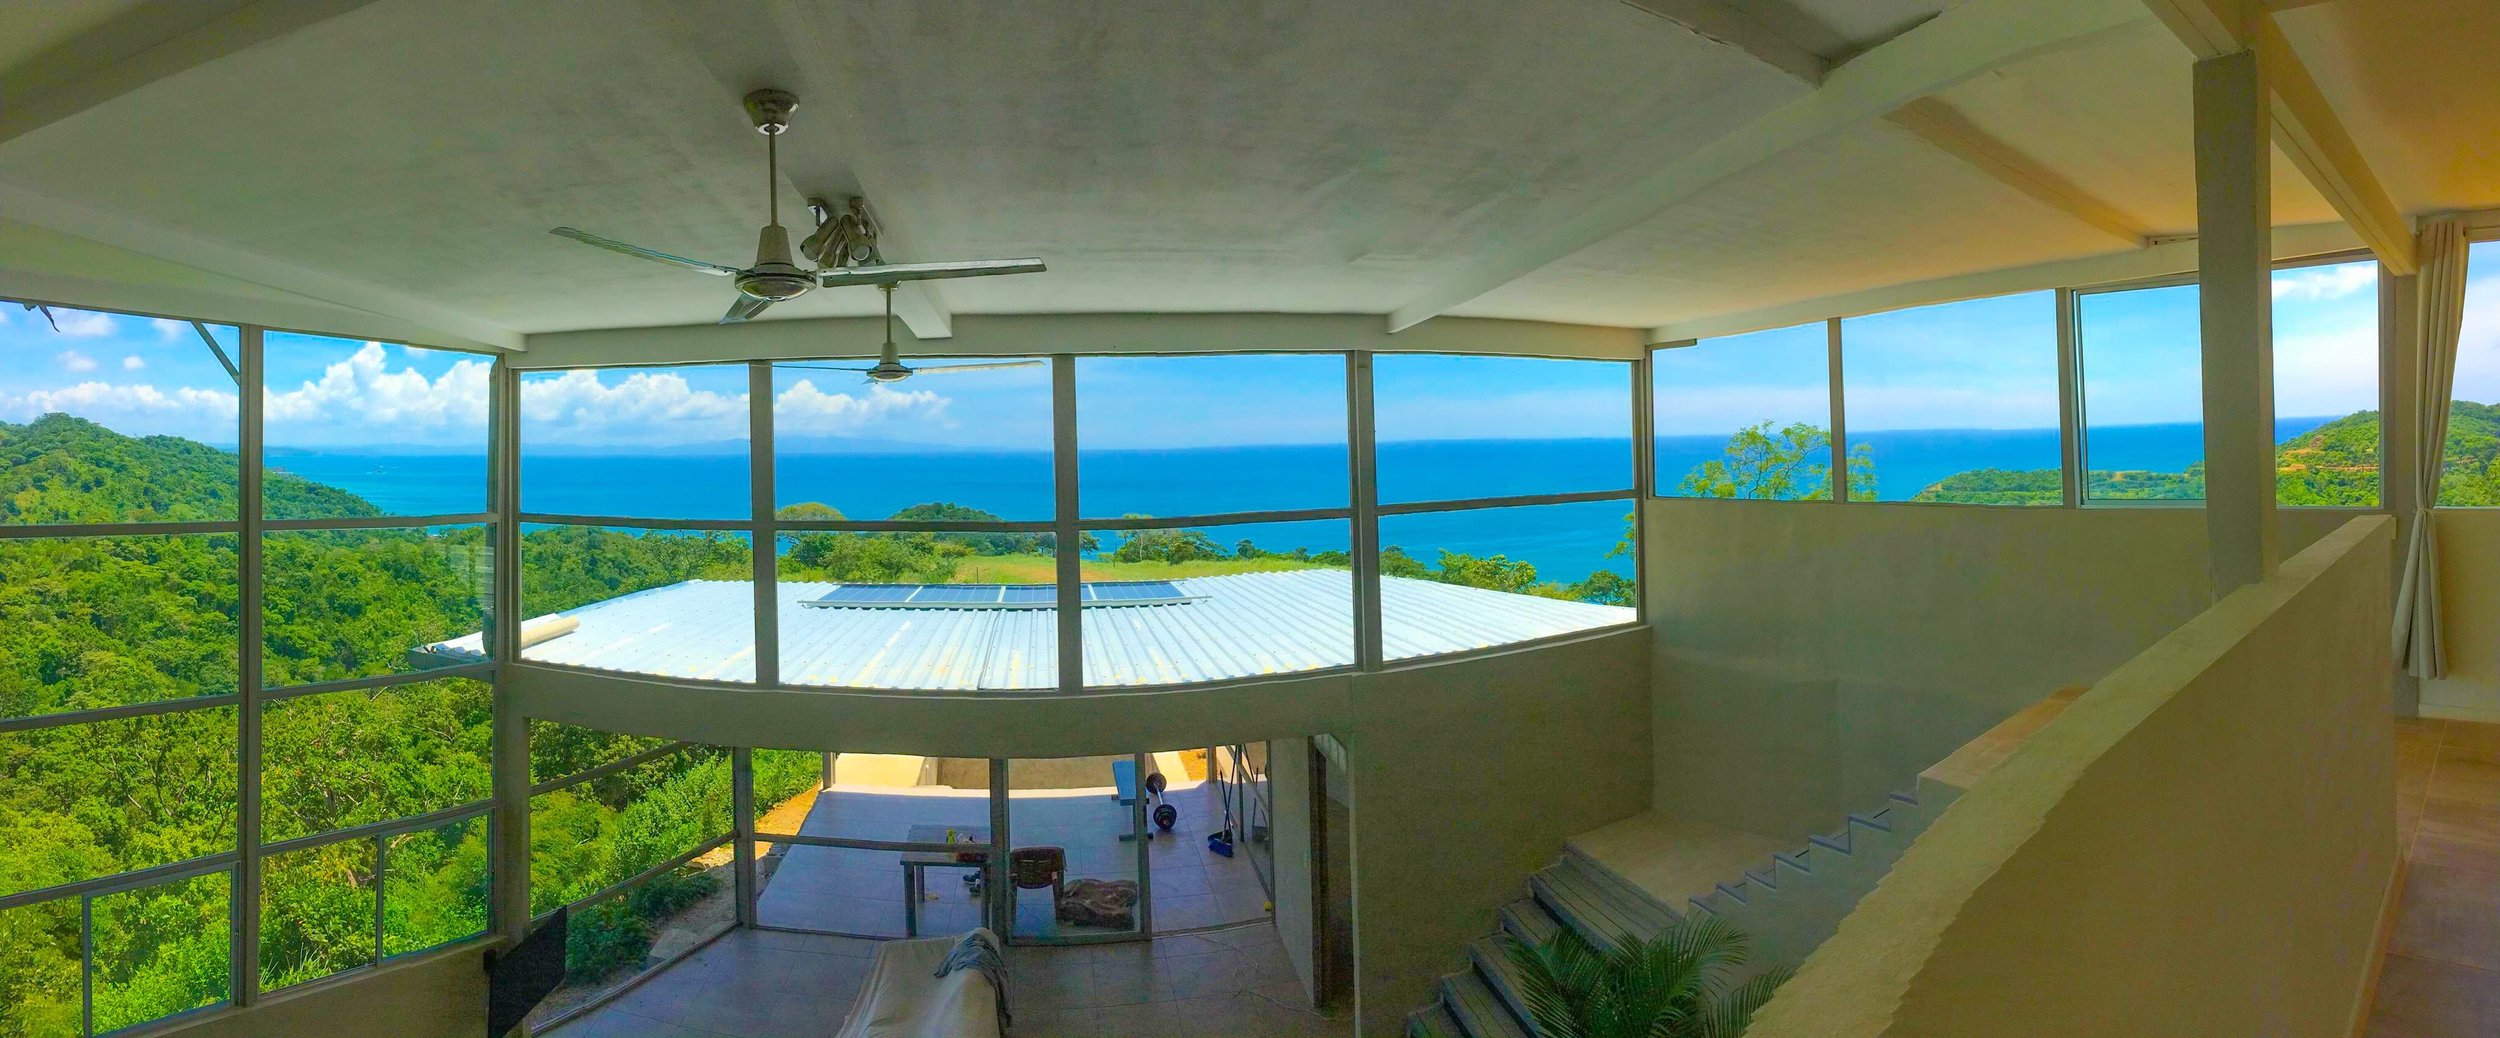 Home For Sale Paradise Bay San Juan Del Sur Nicaragua23-min.JPEG